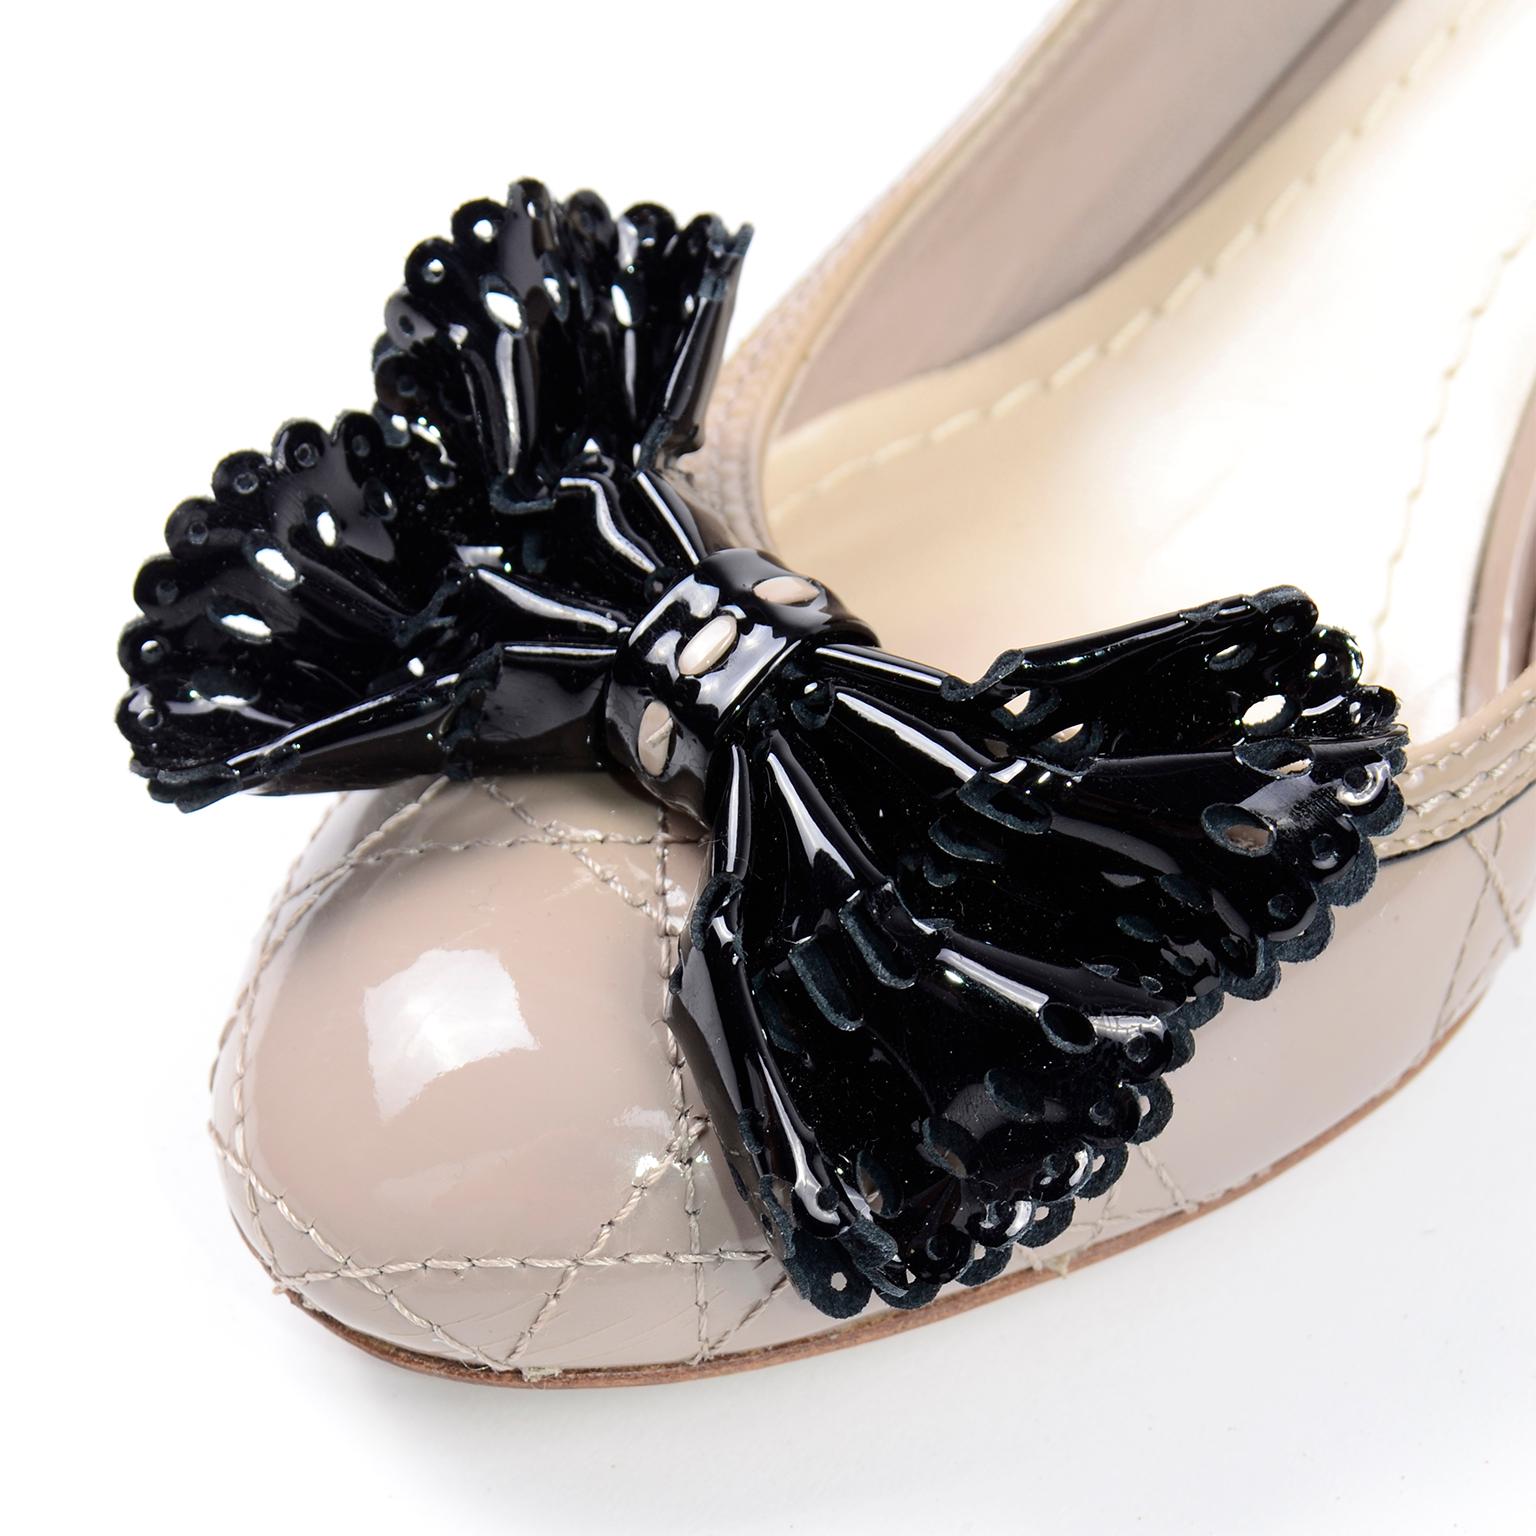 Christian Dior gesteppte Leder Schuhe in Blass taupefarben mit durchbrochenen schwarzen Schleifen & 3